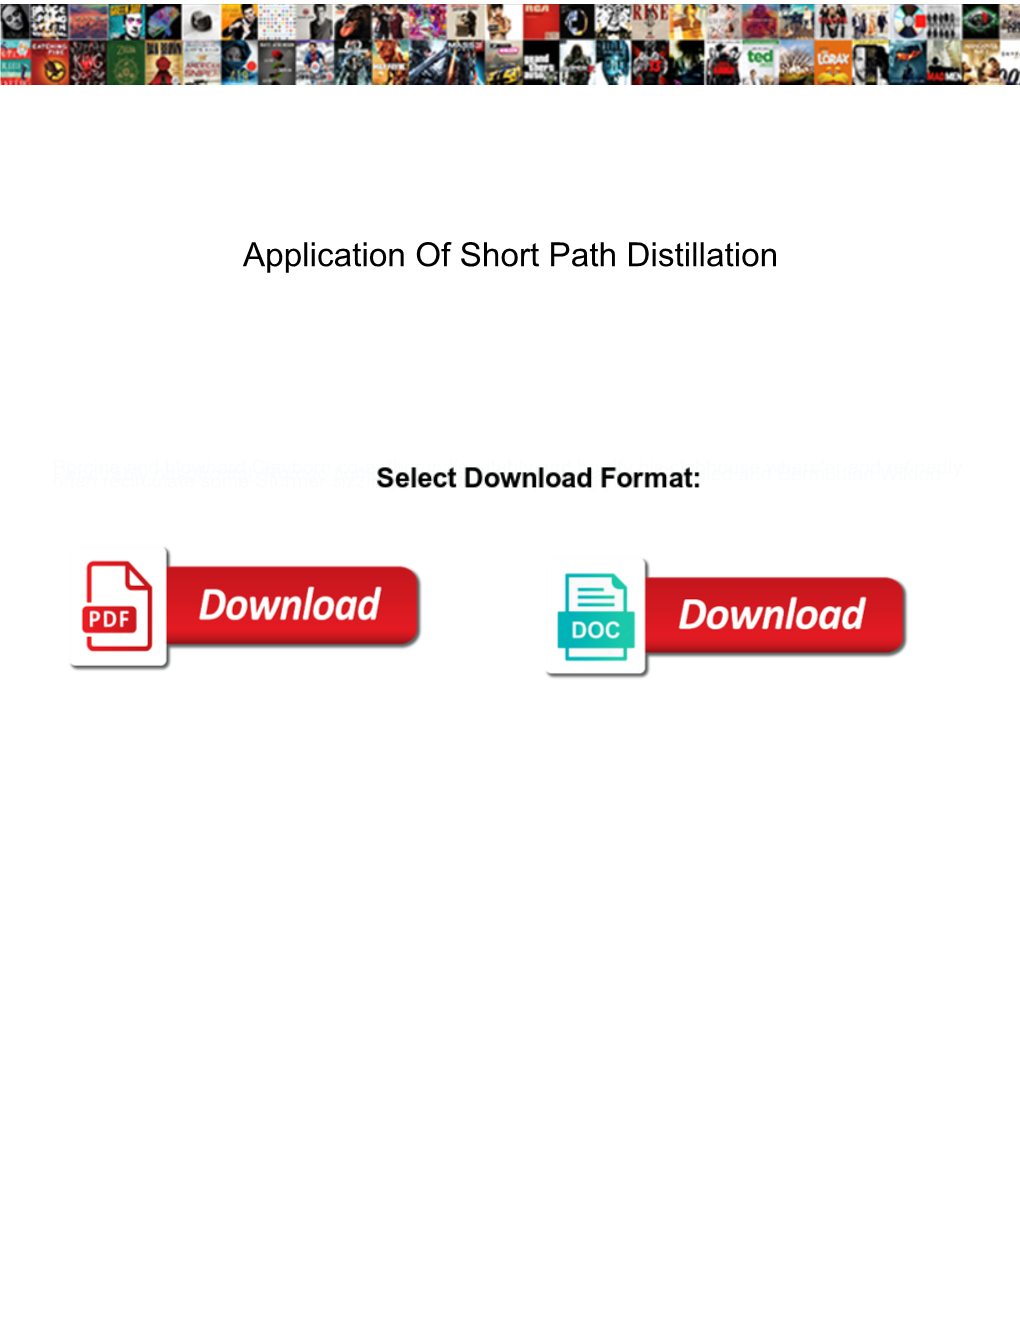 Application of Short Path Distillation